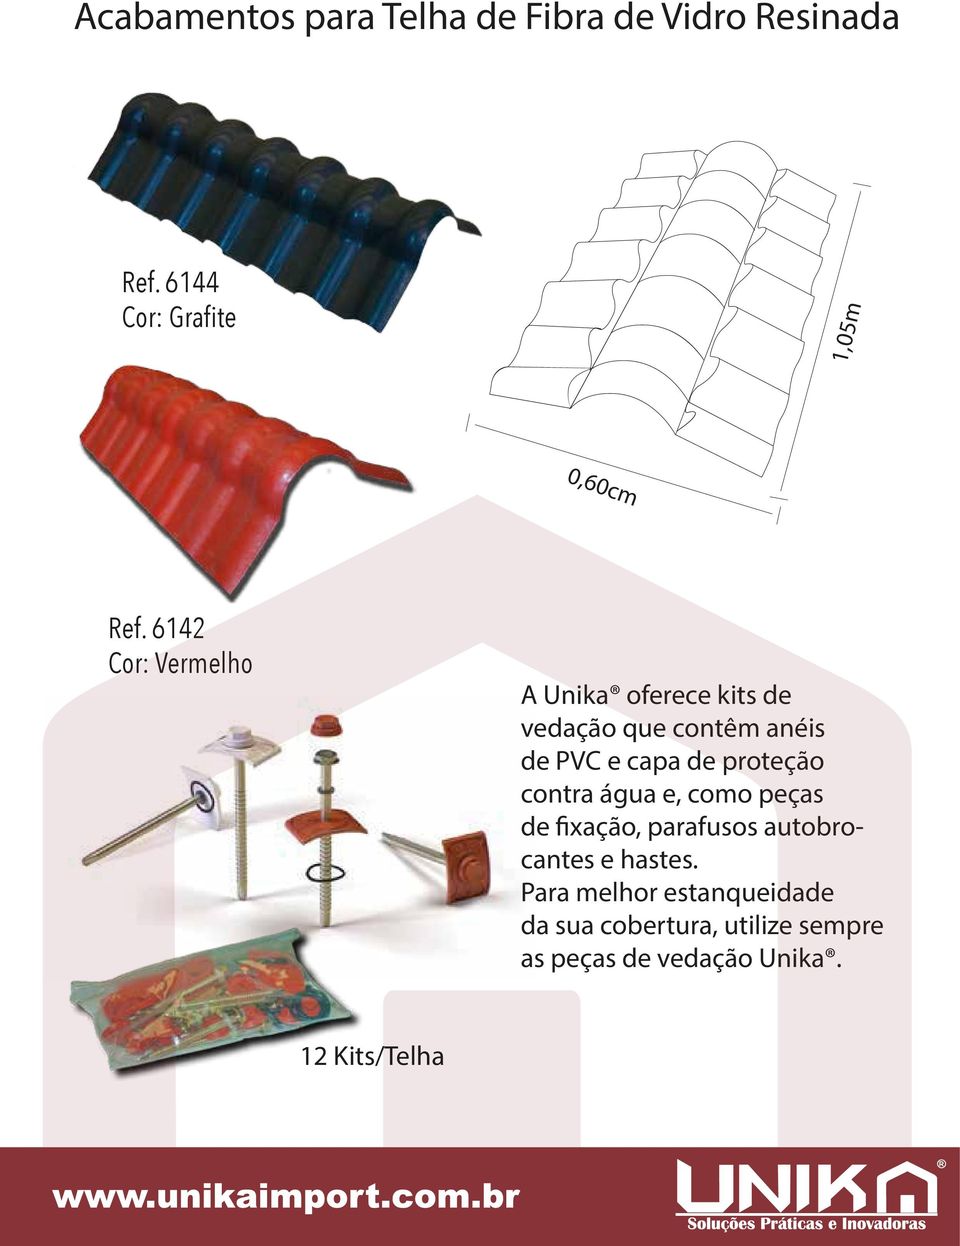 6142 Cor: Vermelho A Unika oferece kits de vedação que contêm anéis de PVC e capa de